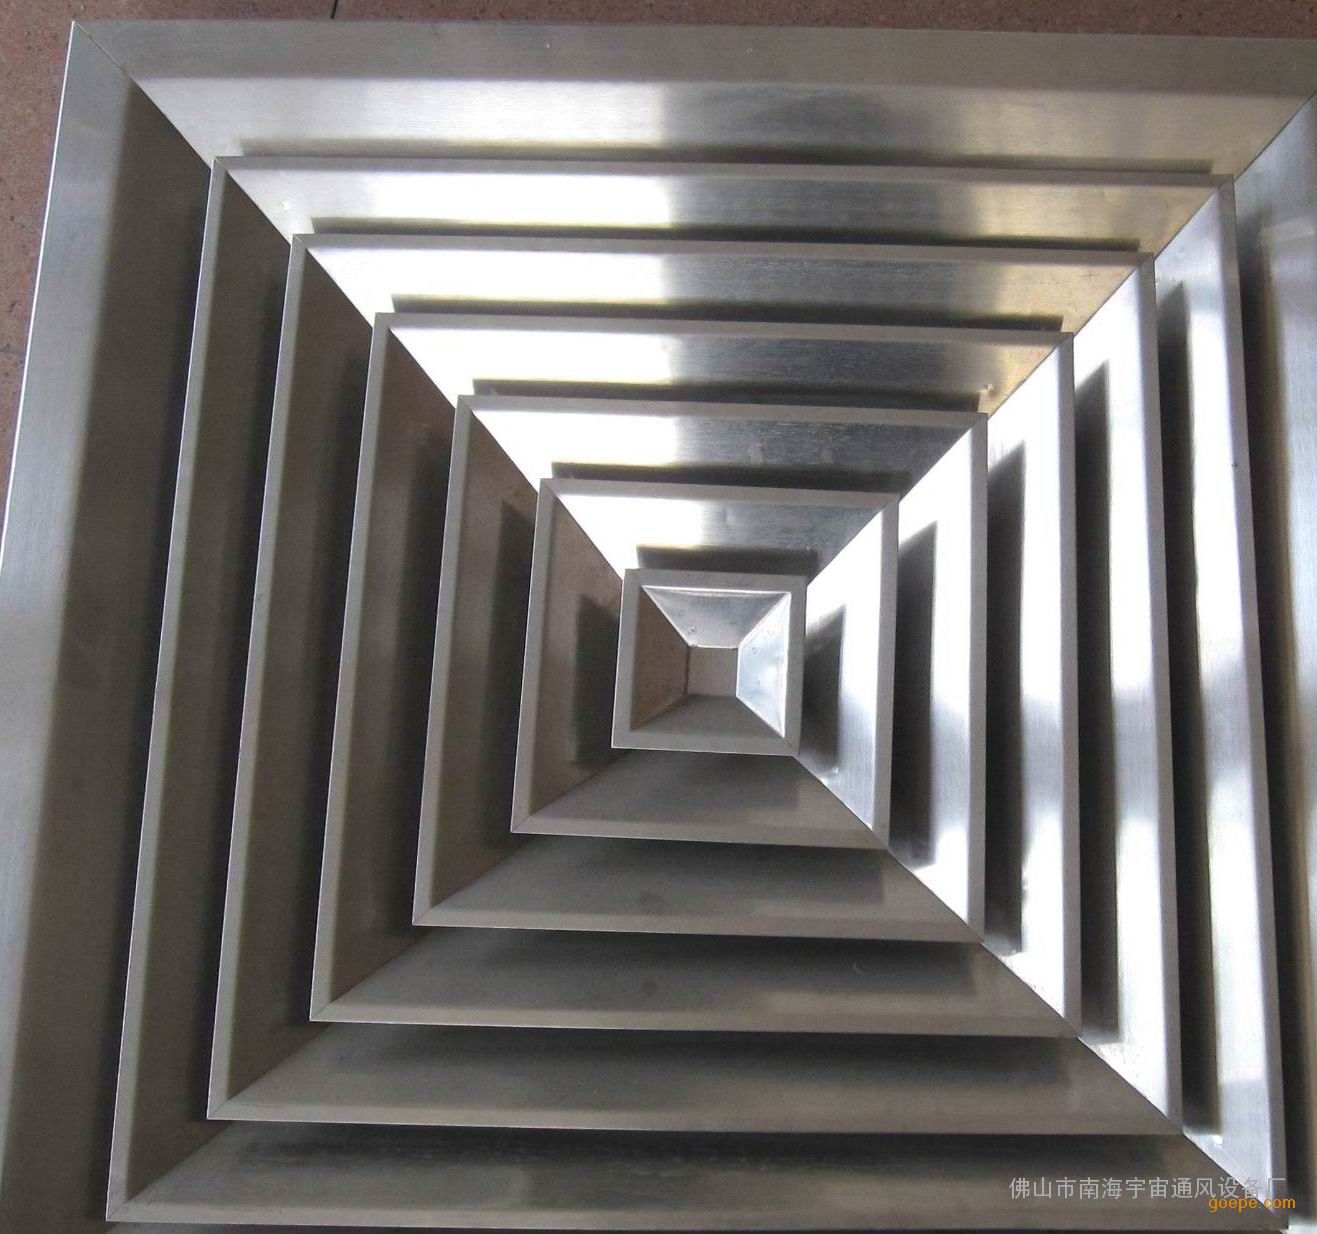 德州立丰直销各种型号的不锈钢方形散流器